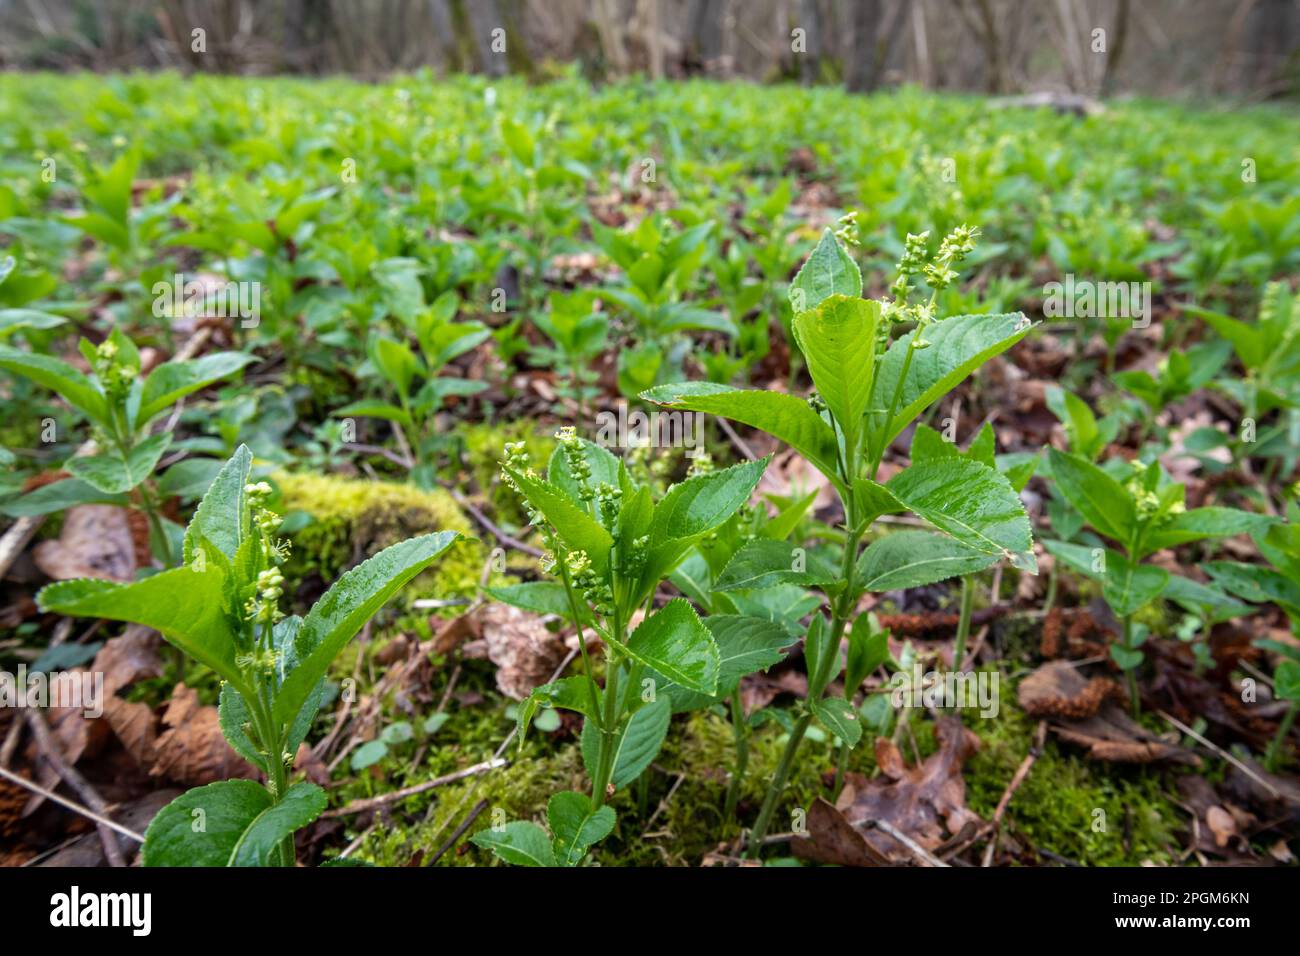 Mercurio del cane (Mercurialis perennis) che copre il pavimento del bosco durante il mese di marzo o la primavera, Hampshire, Inghilterra, Regno Unito Foto Stock